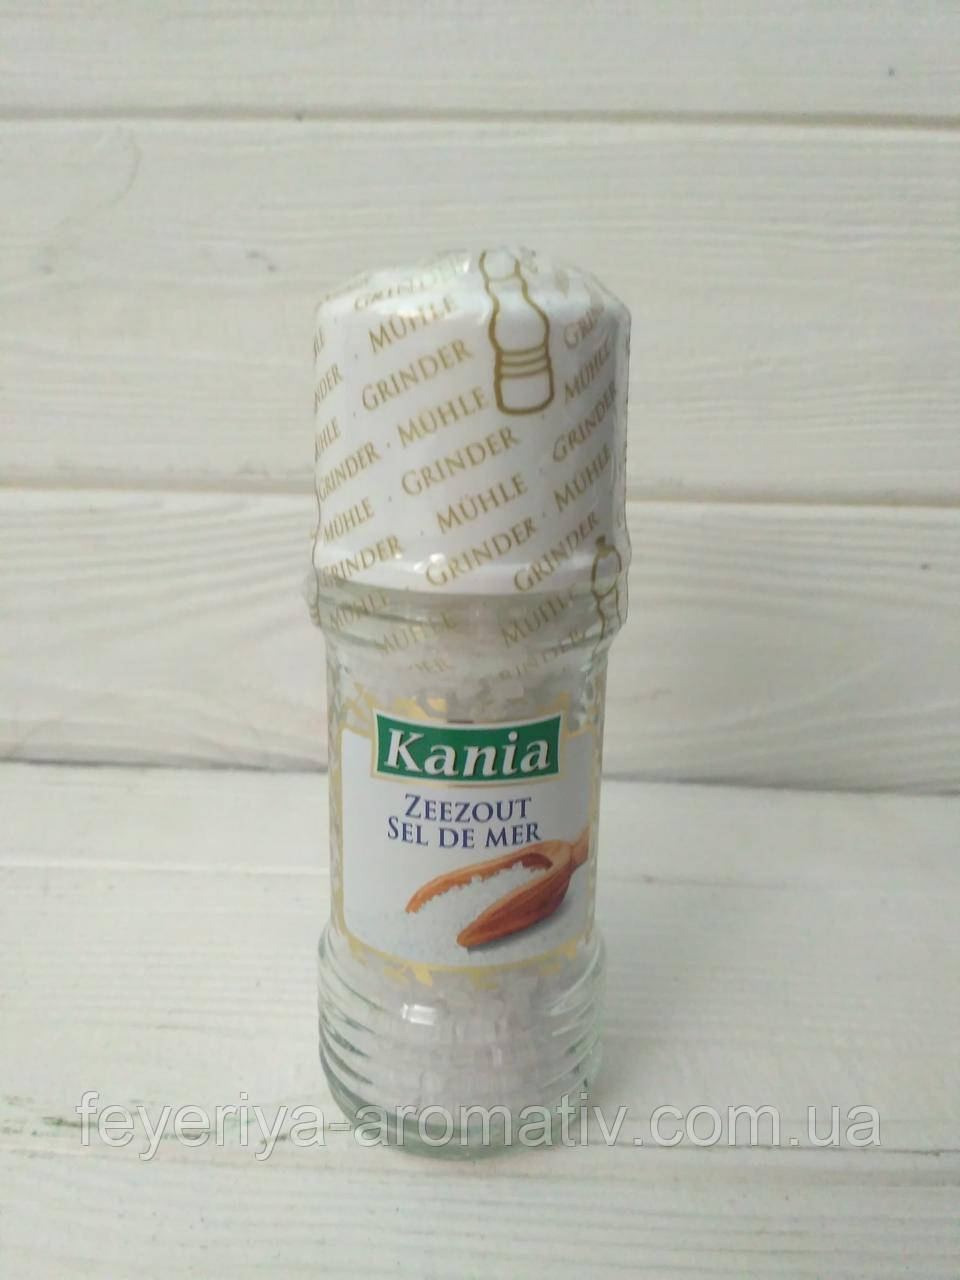 Кухонная морская соль Kania Zeezout sel de mer с мельницей 90гр (Польша)